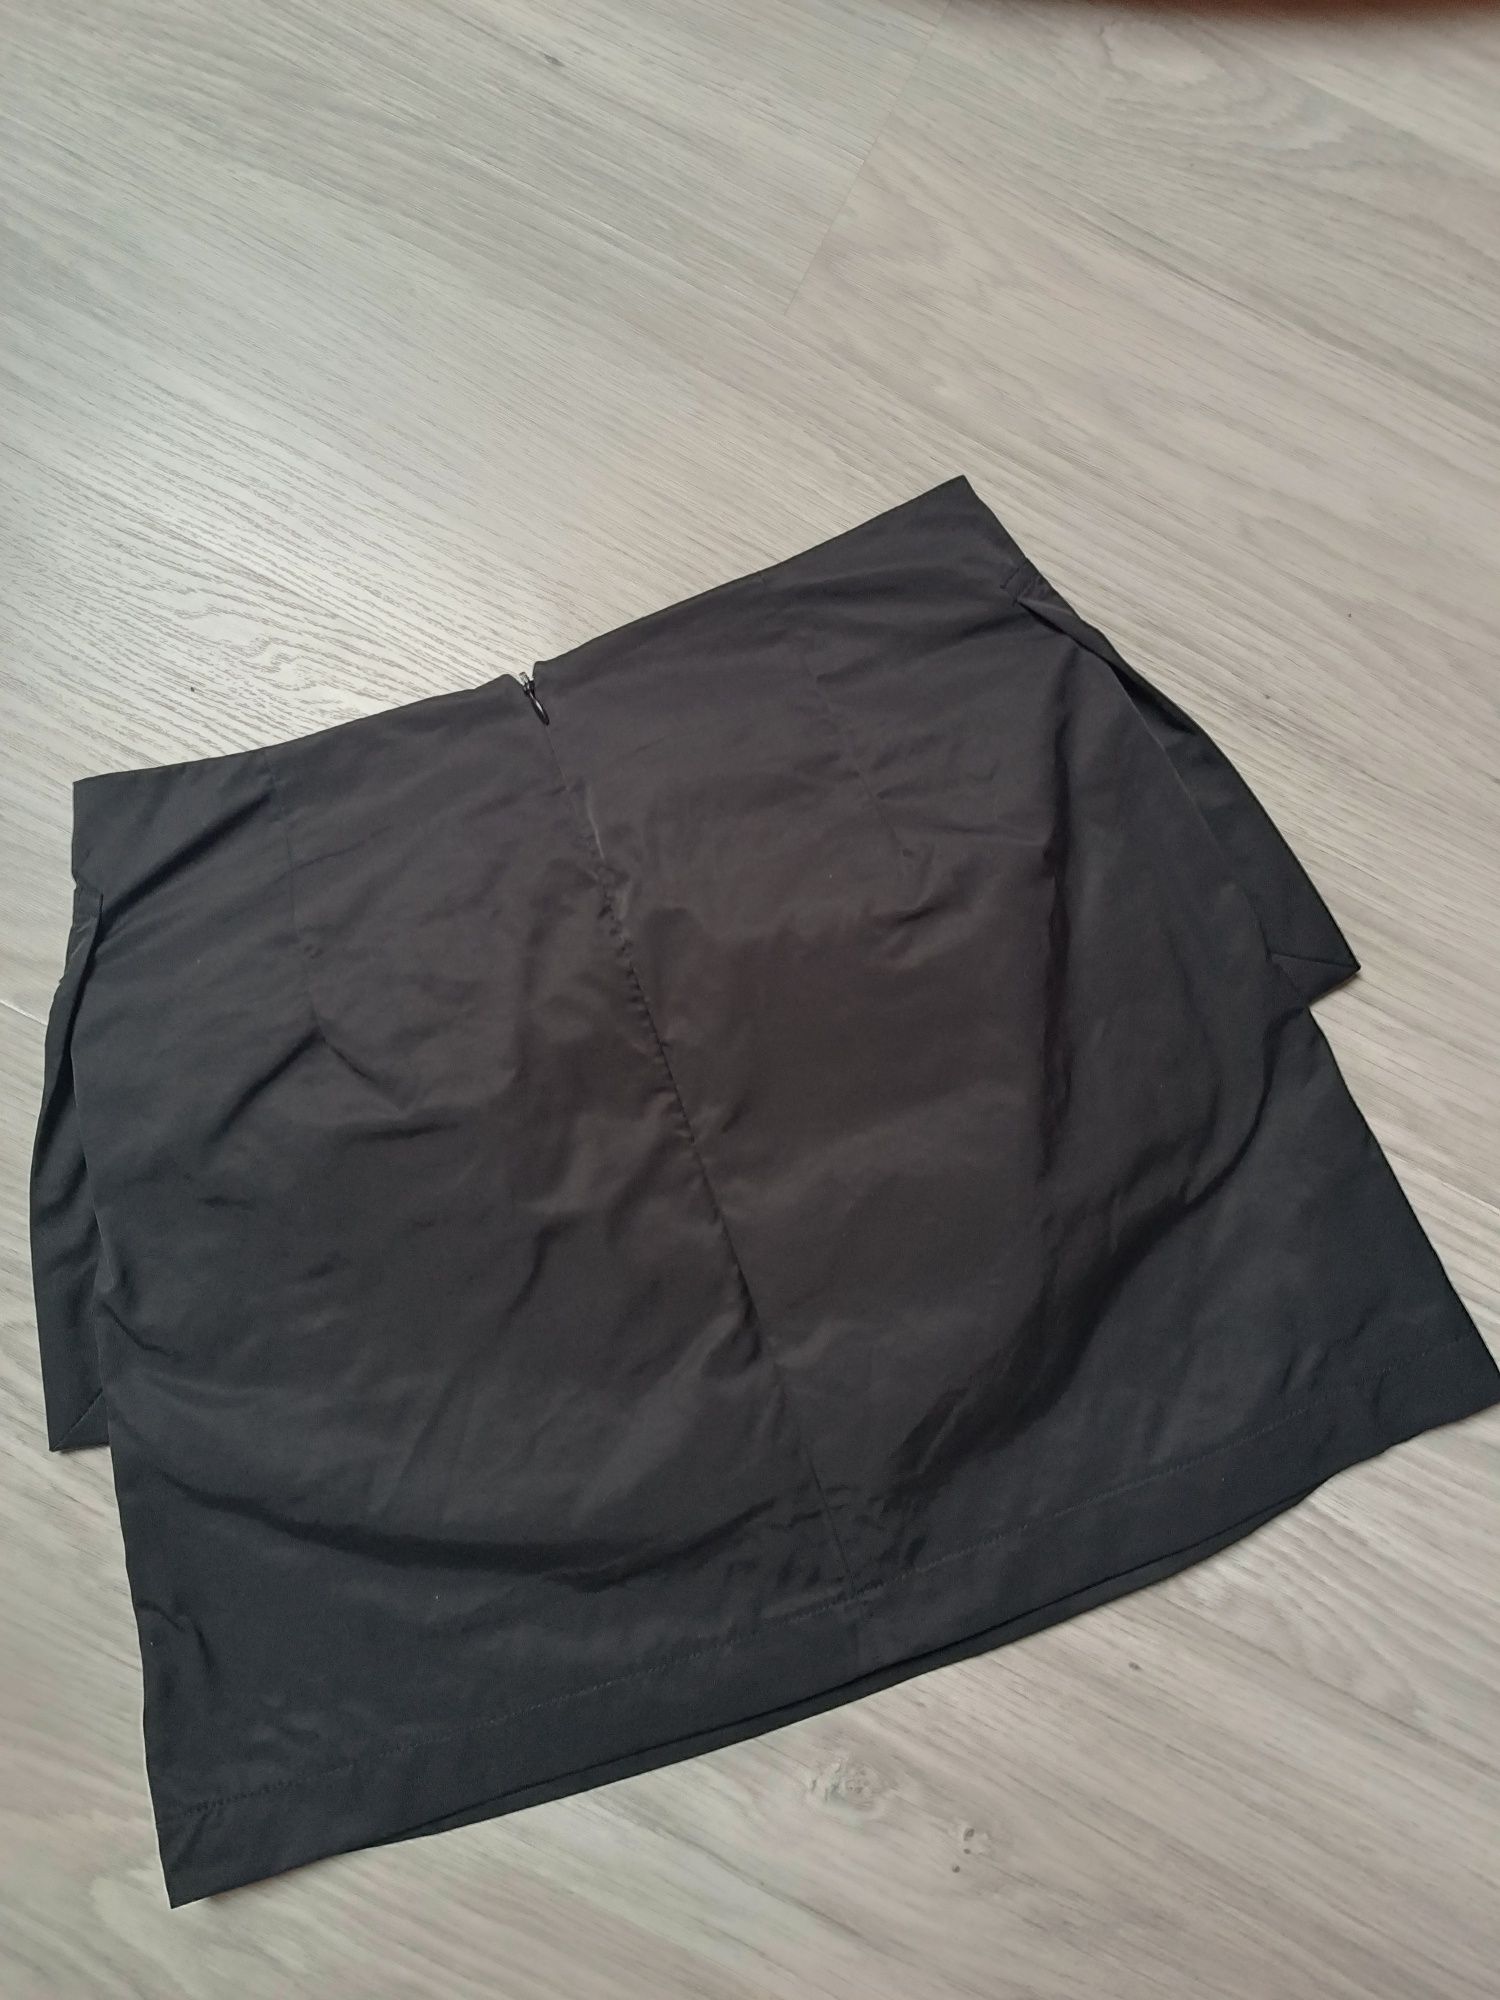 Reserved spódnica czarna szkolna damska spódniczka dziewczęca S 158-64